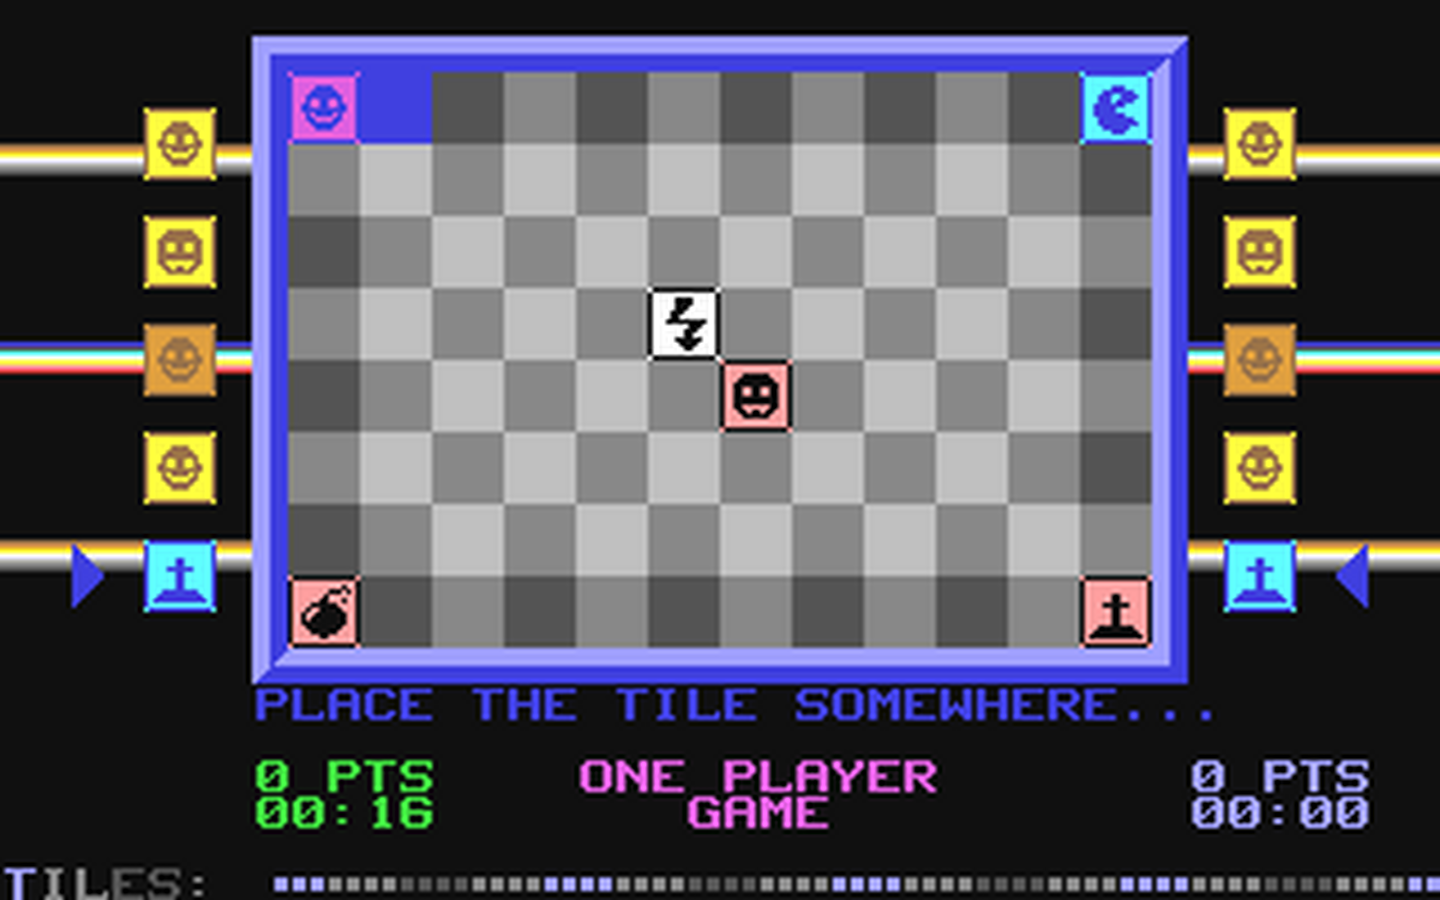 C64 GameBase Tile_-_The_Revenge Explosive_Design 1995